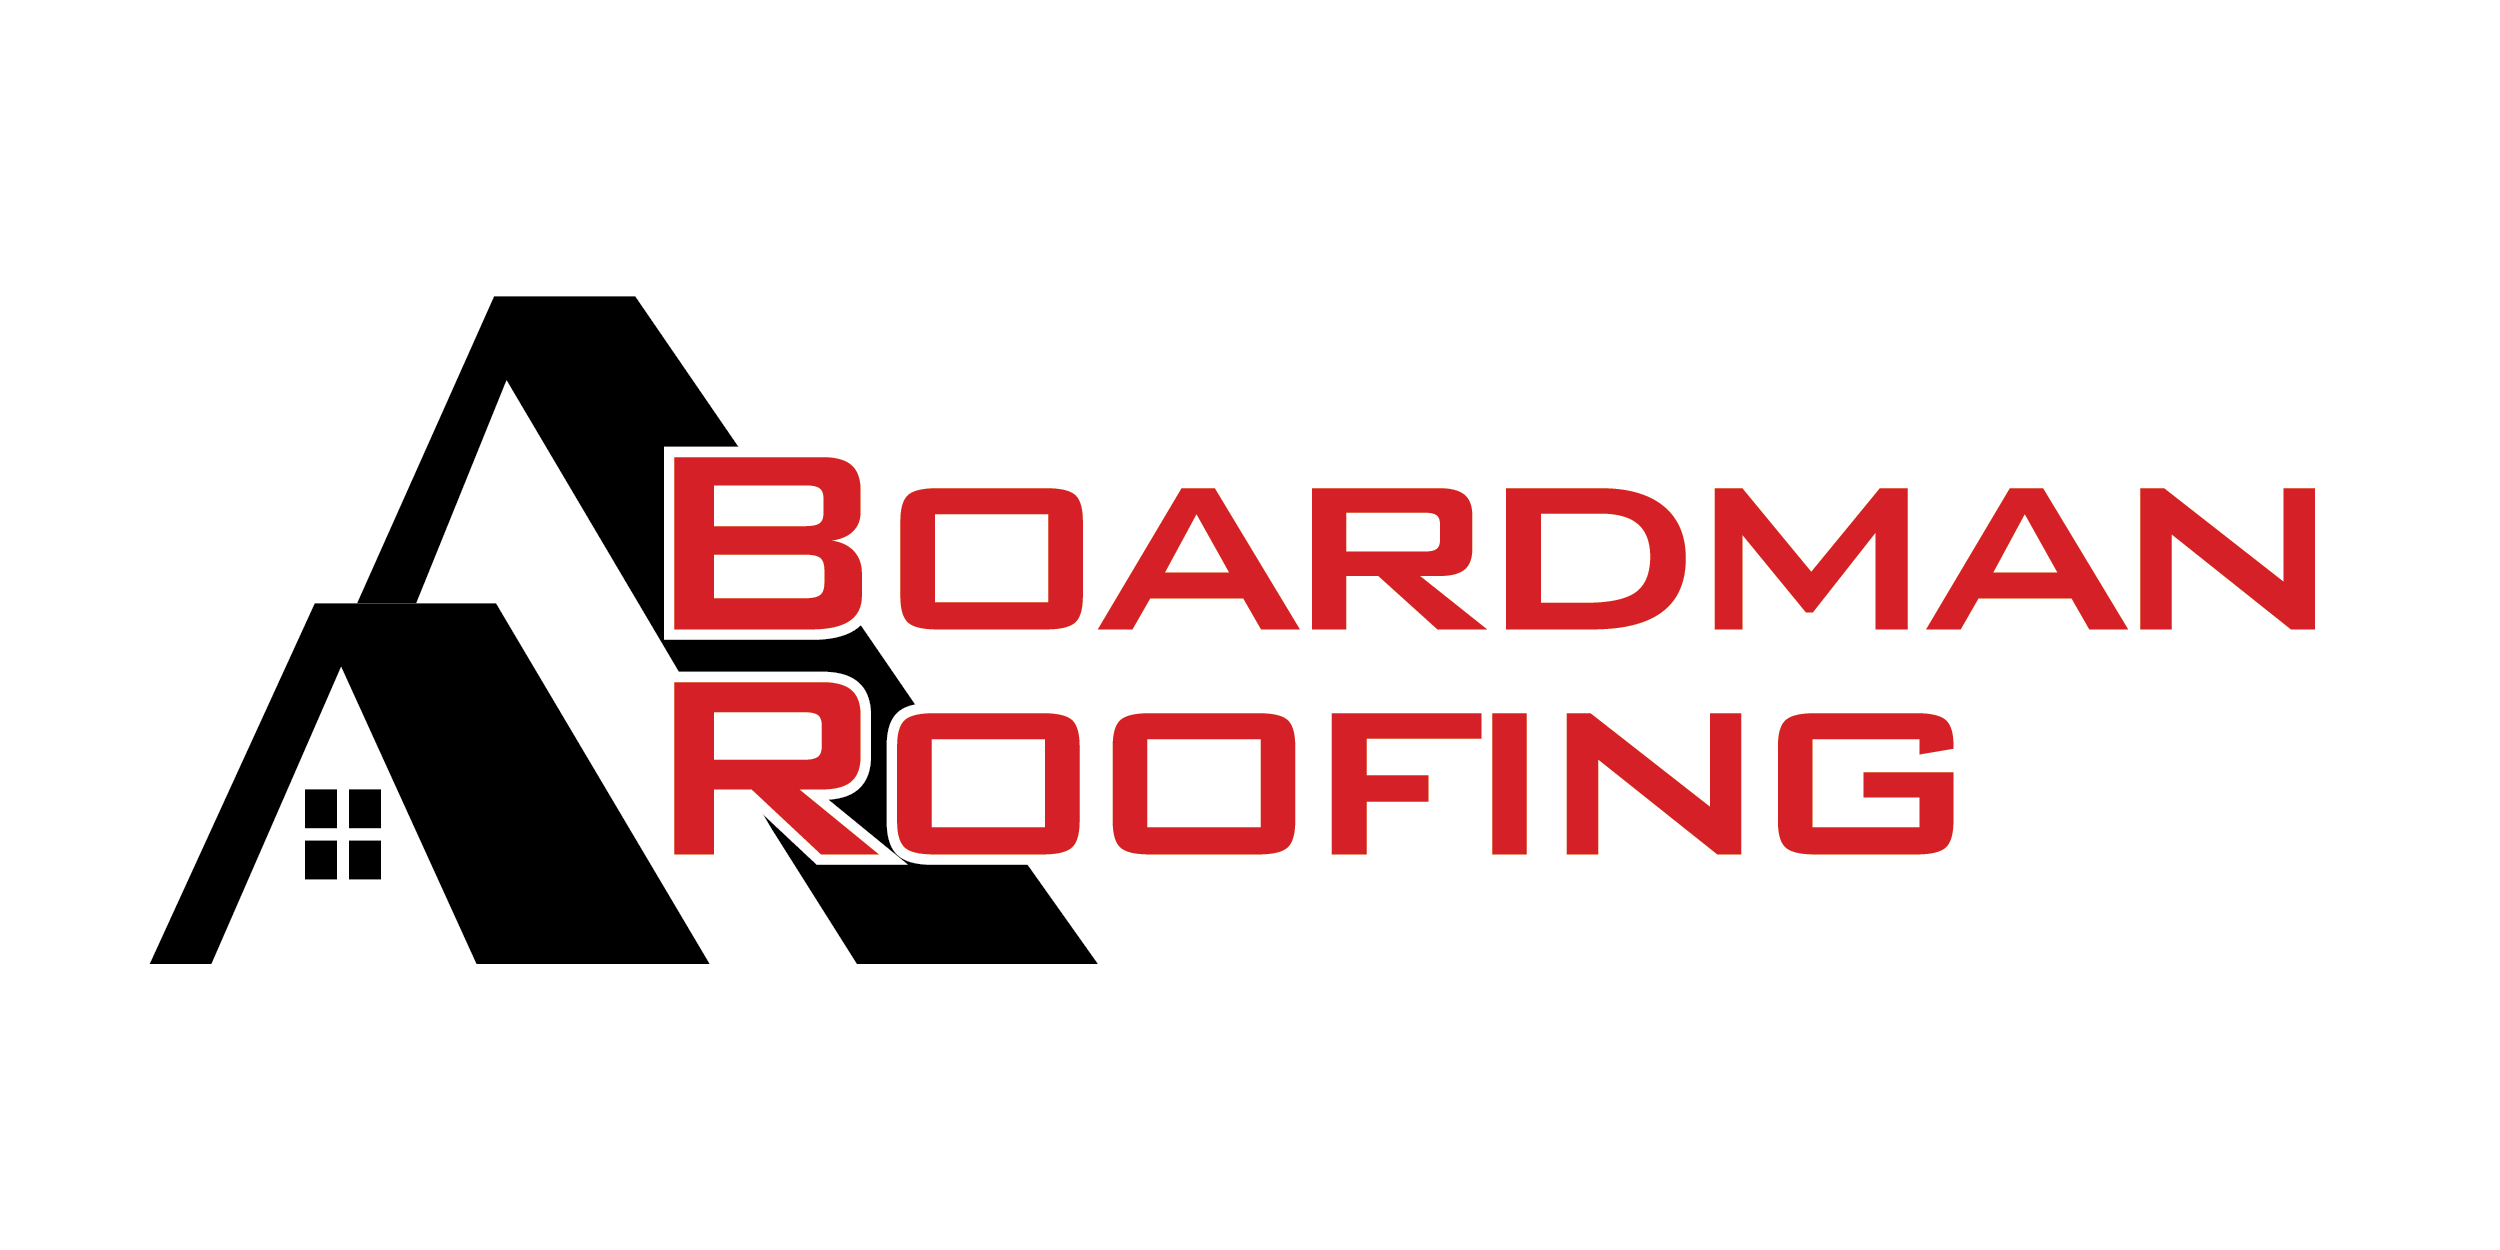 Boardman Roofing